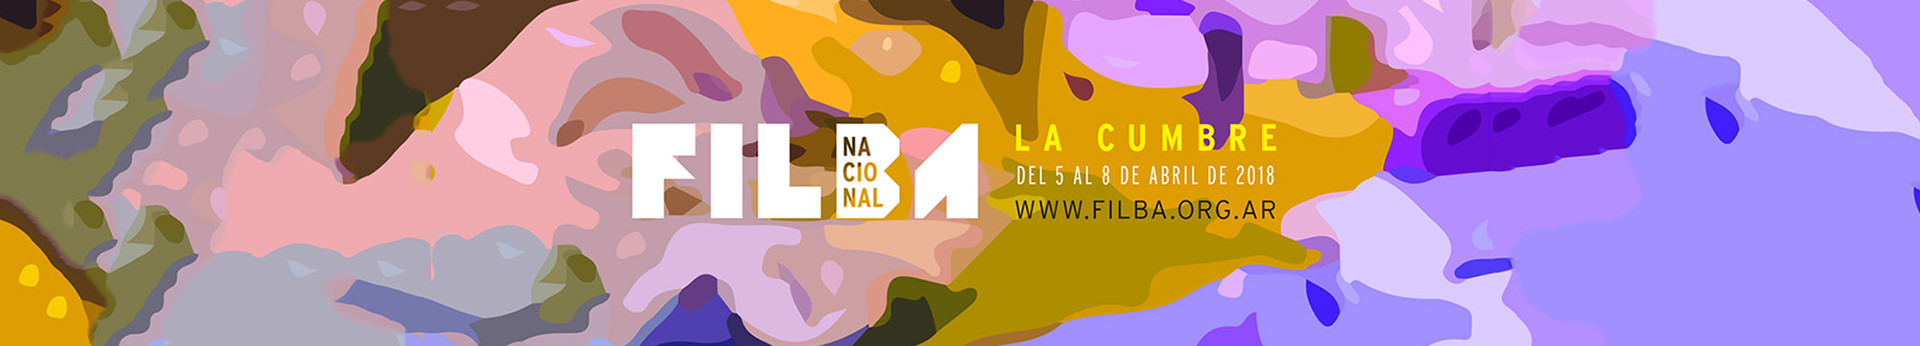 Filba Nacional La Cumbre 2018